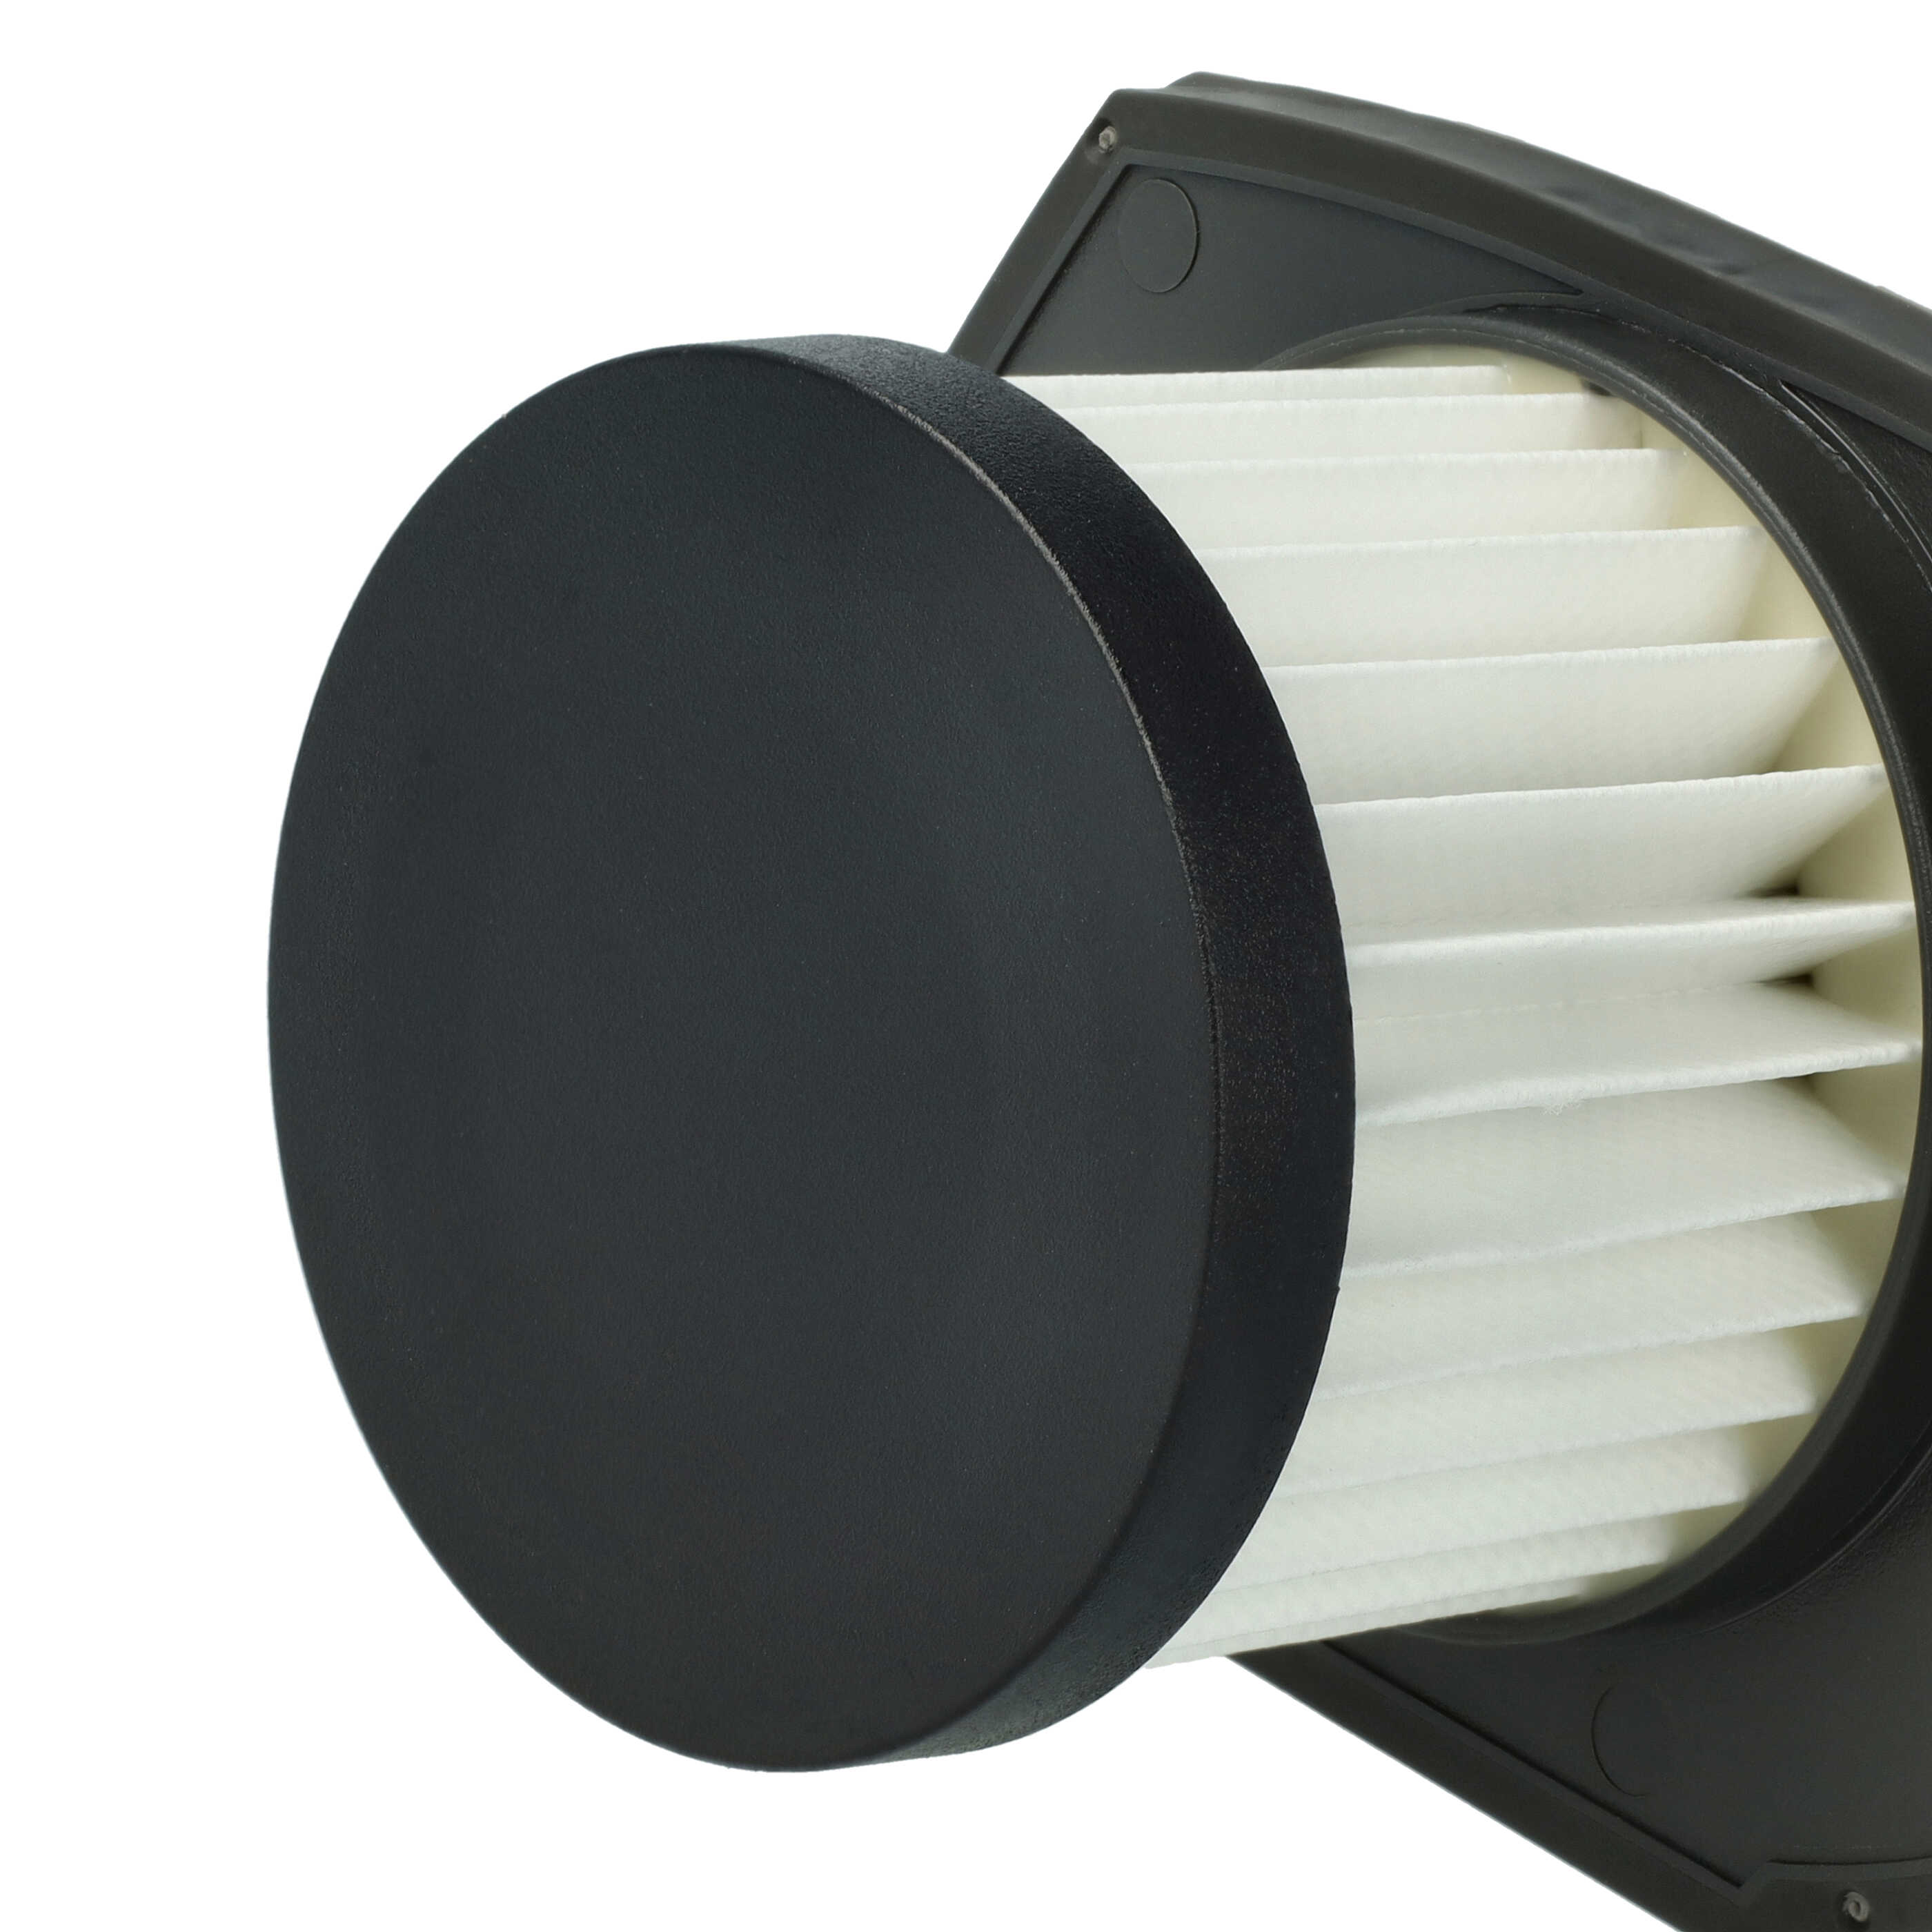 Filtro sostituisce Ryobi 313282001 per aspirapolvere - filtro HEPA, nero / bianco